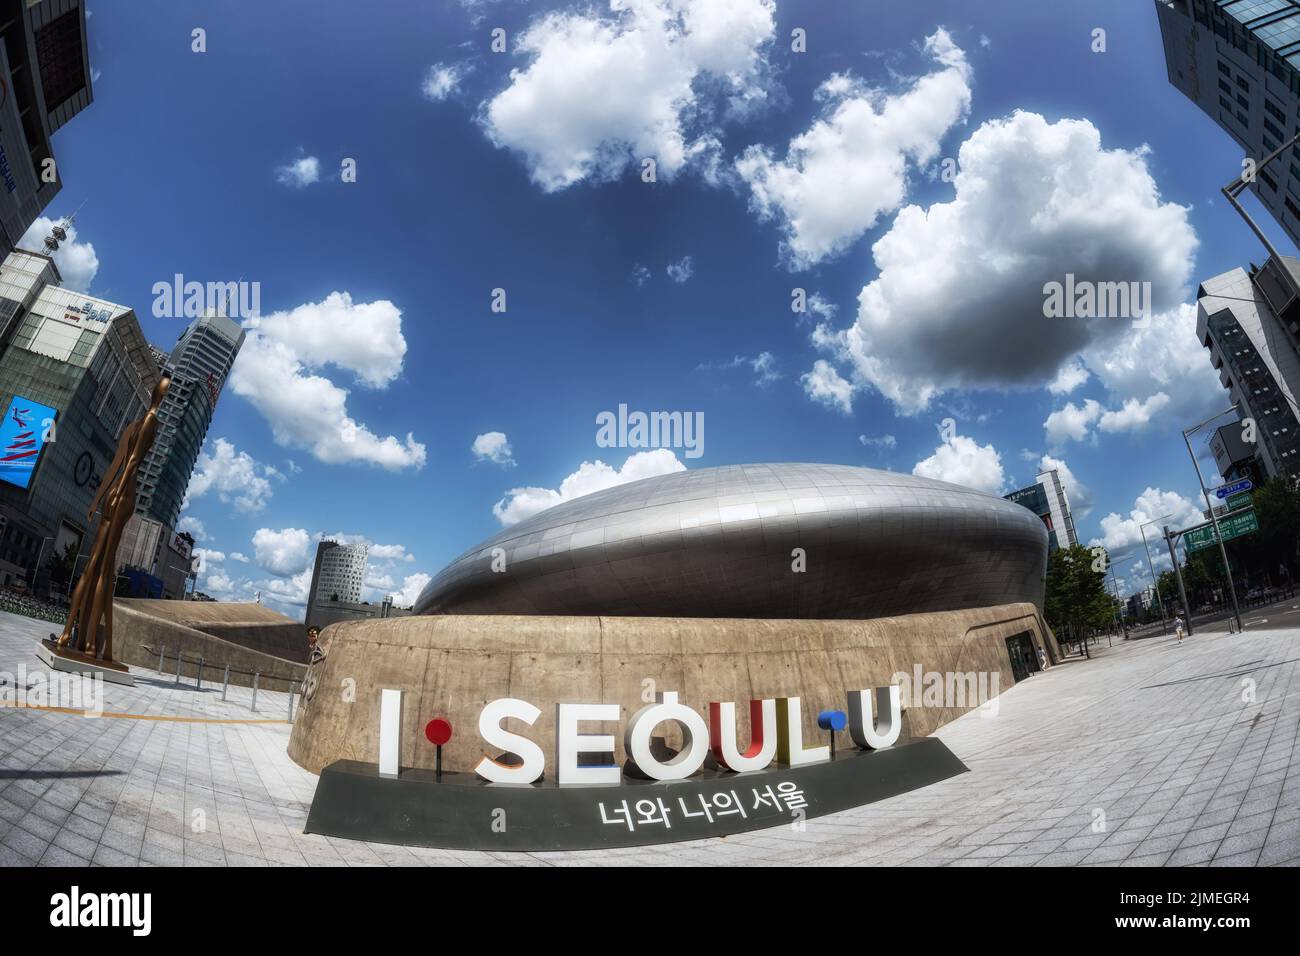 Dongdaemun design plaza I Seoul U logo Stock Photo